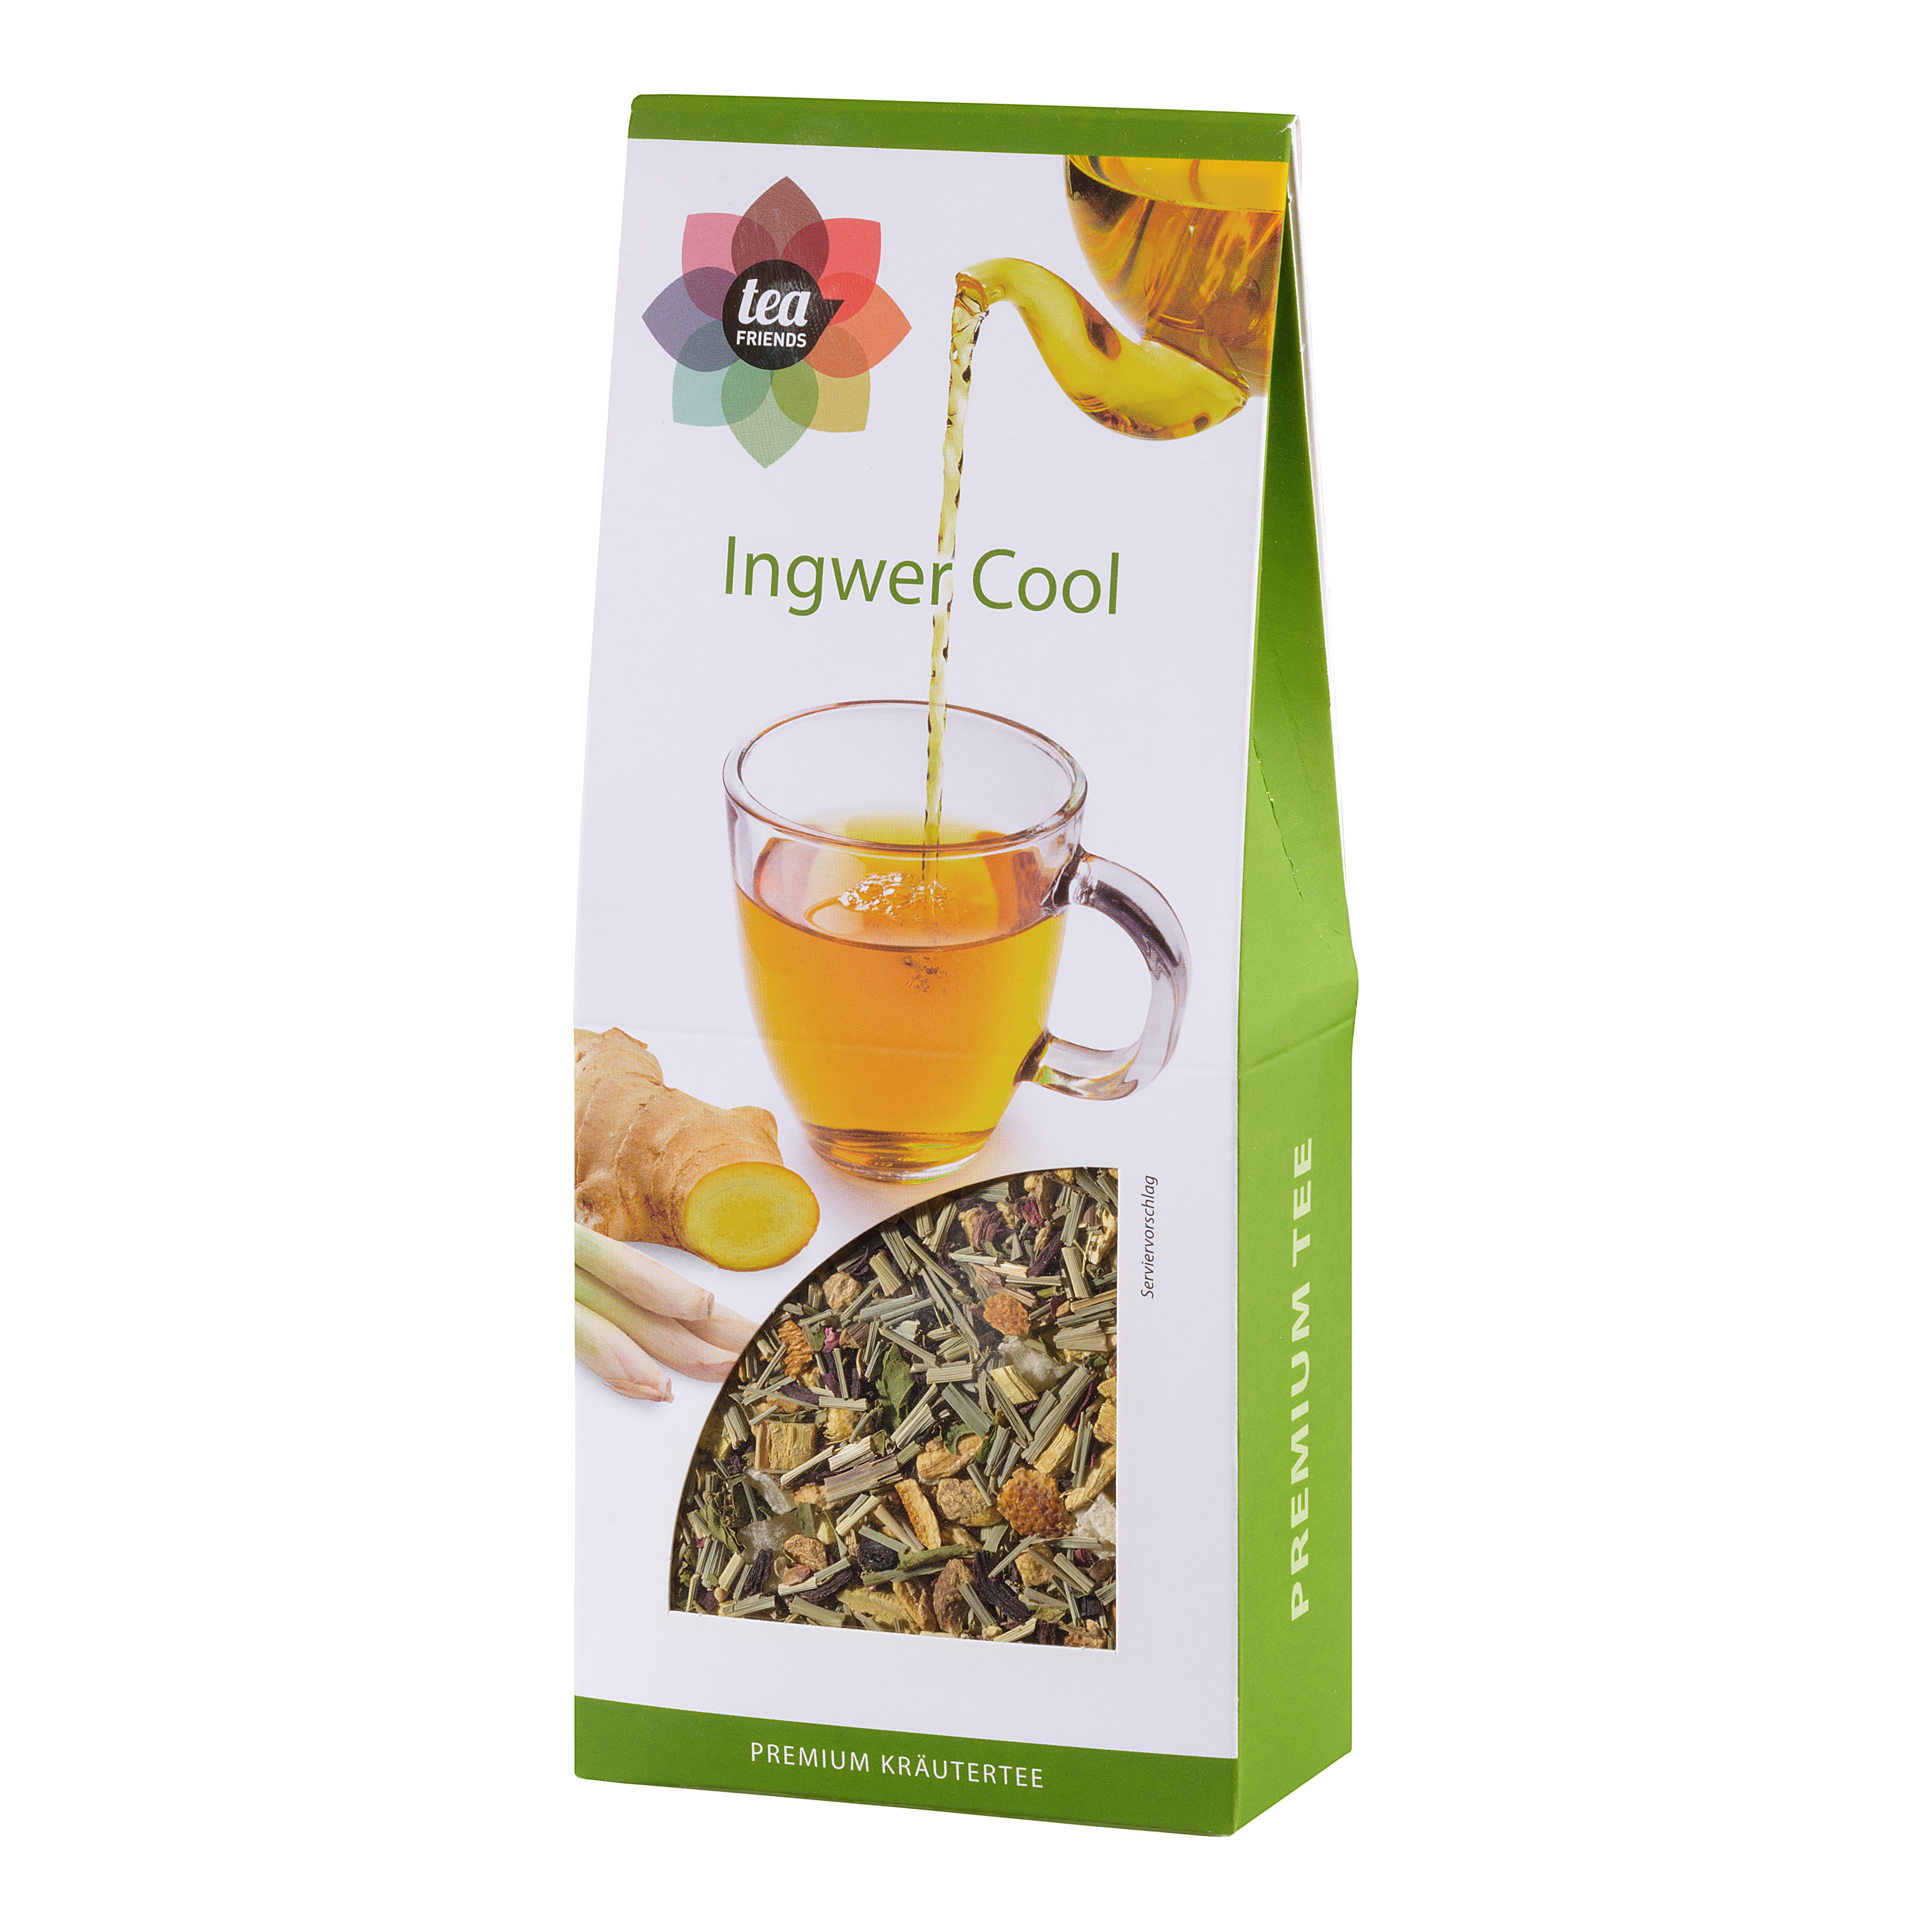 90g Ingwer Cool loser Kräuter Tee